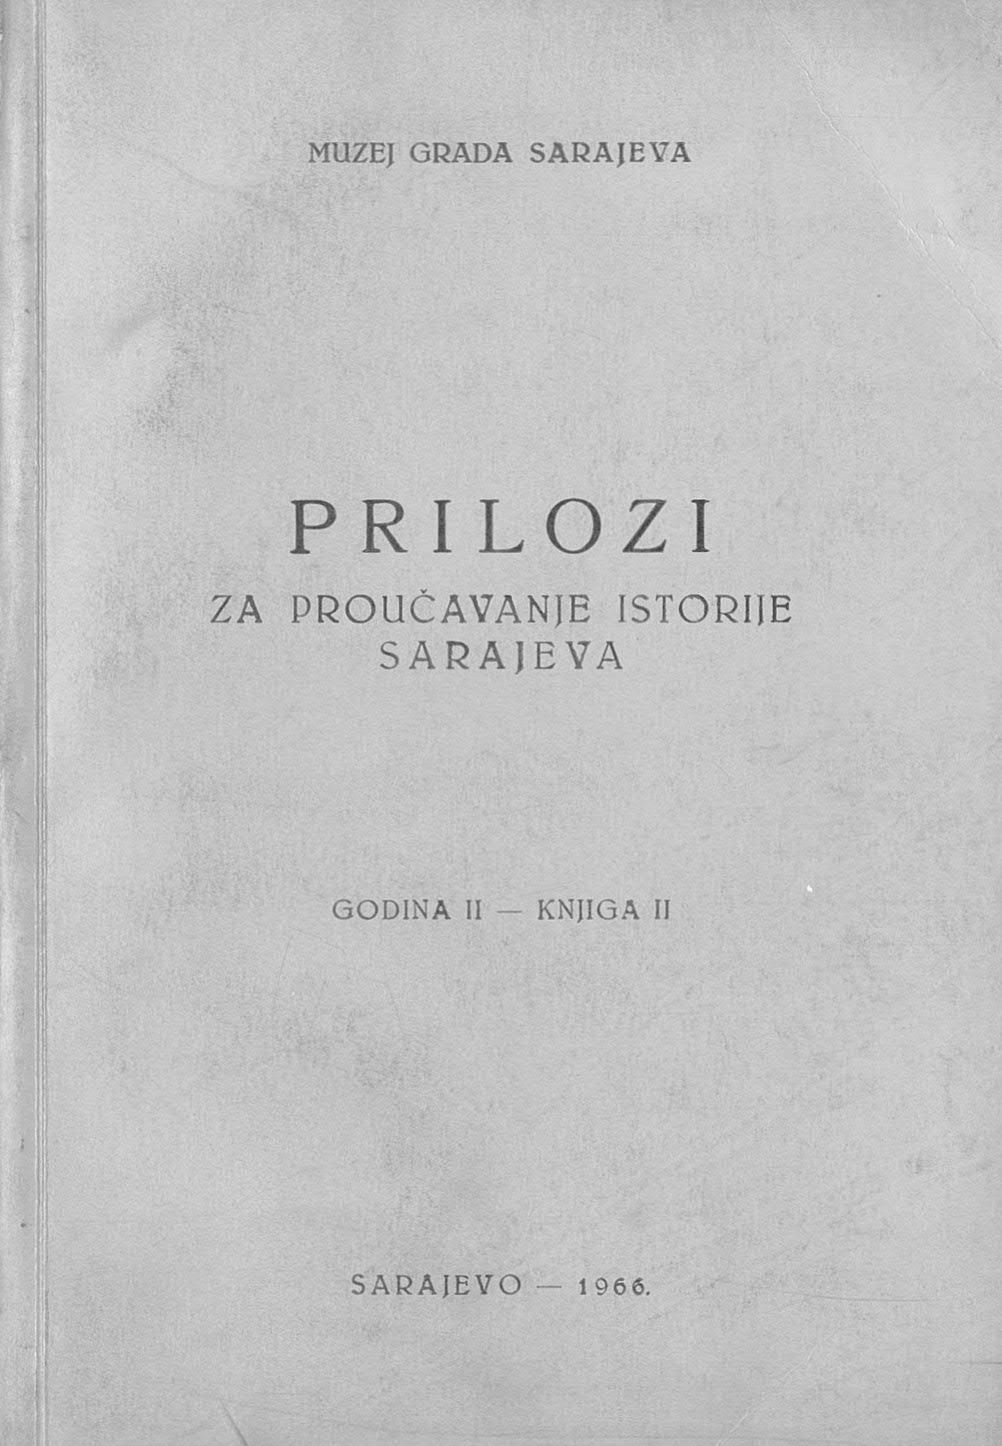 Prilozi 2 (1966)